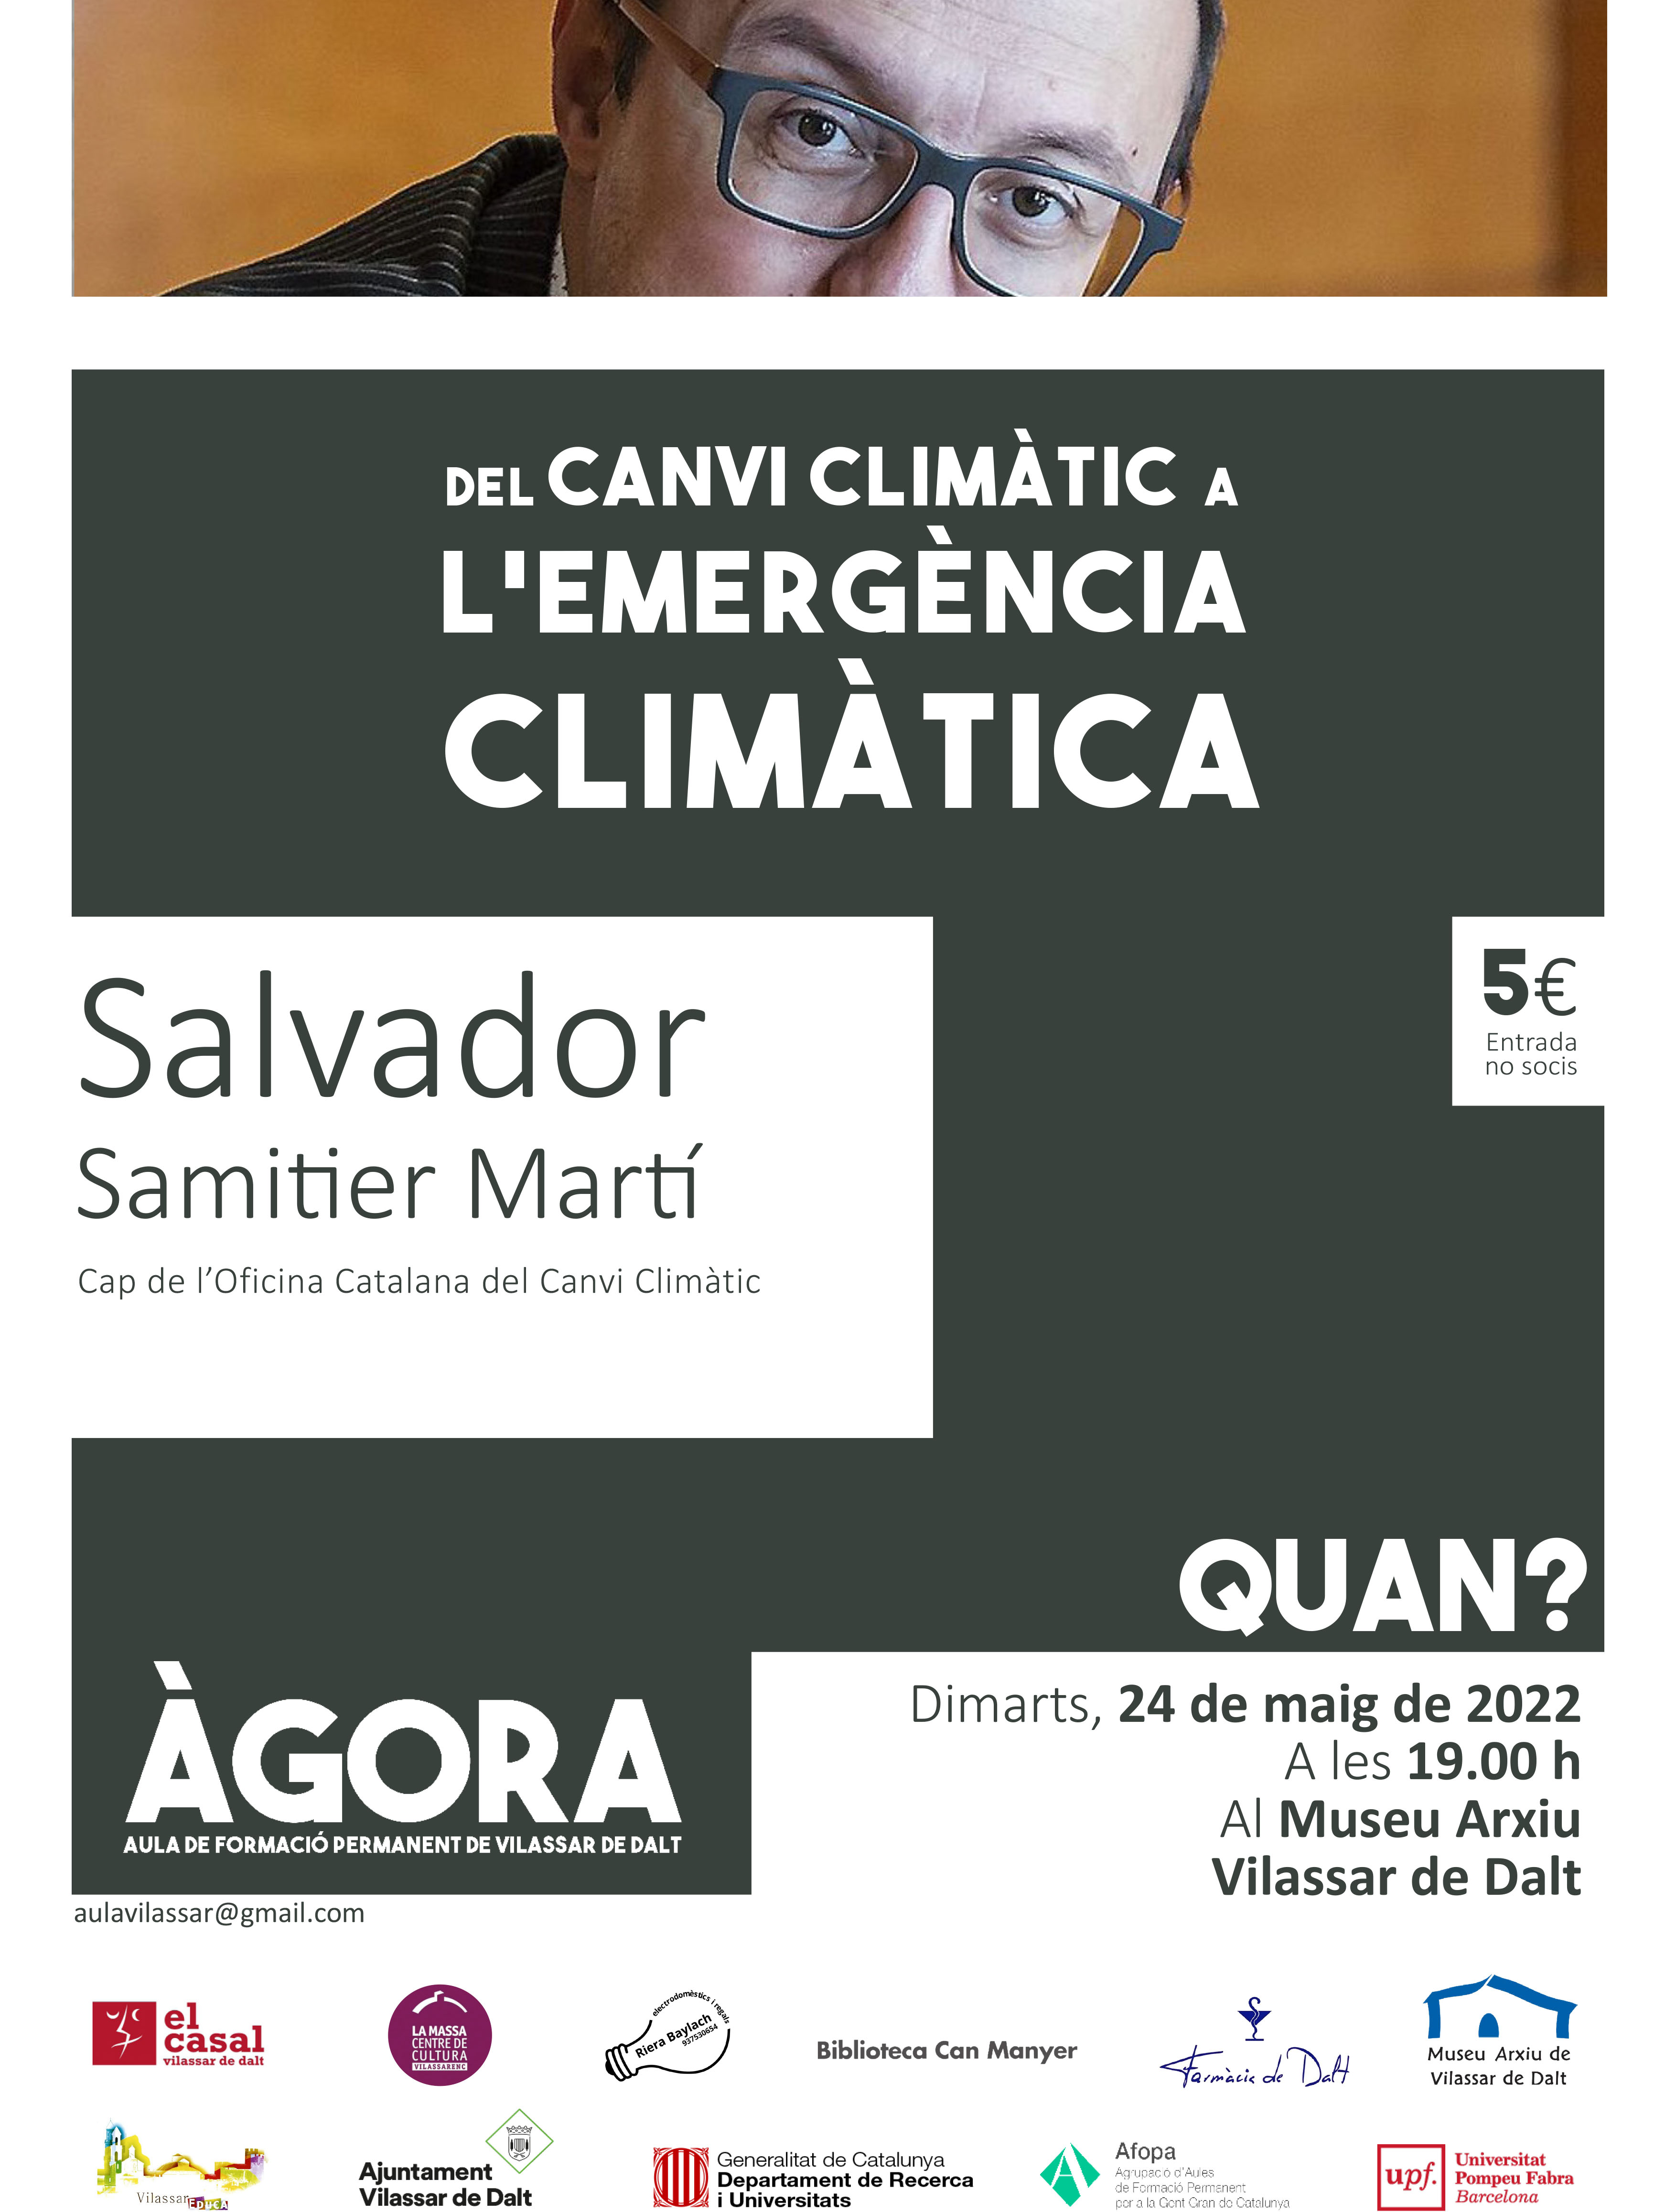 Àgora Vilassar: Del canvi climàtic a l'emergència climàtica